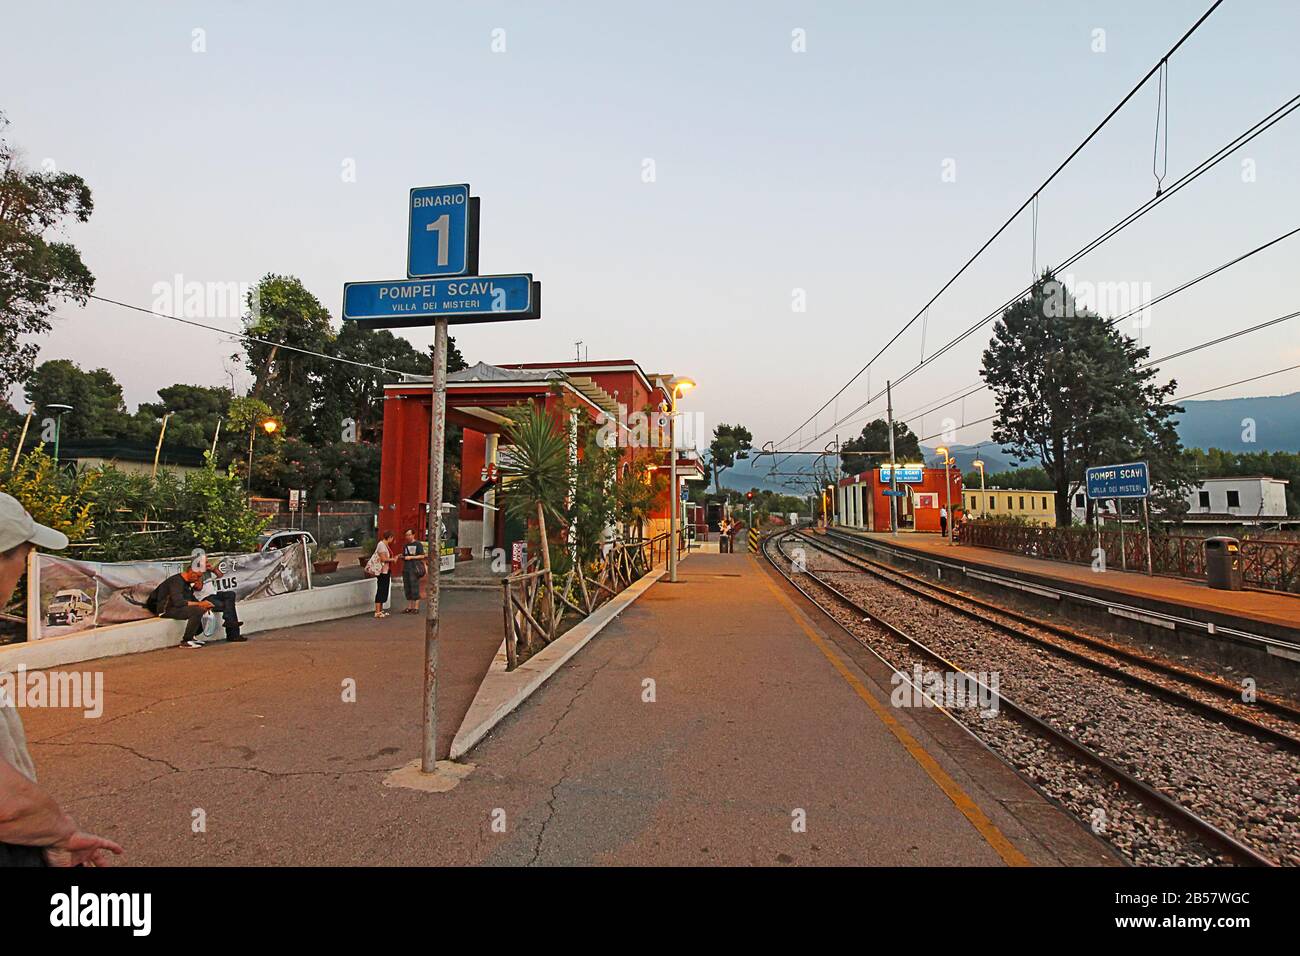 Pompei Scavi estación en la línea de tren Circumvesuviana cerca de Nápoles, Italia. Esta línea de tren es el principal acceso a las ruinas. Foto de stock